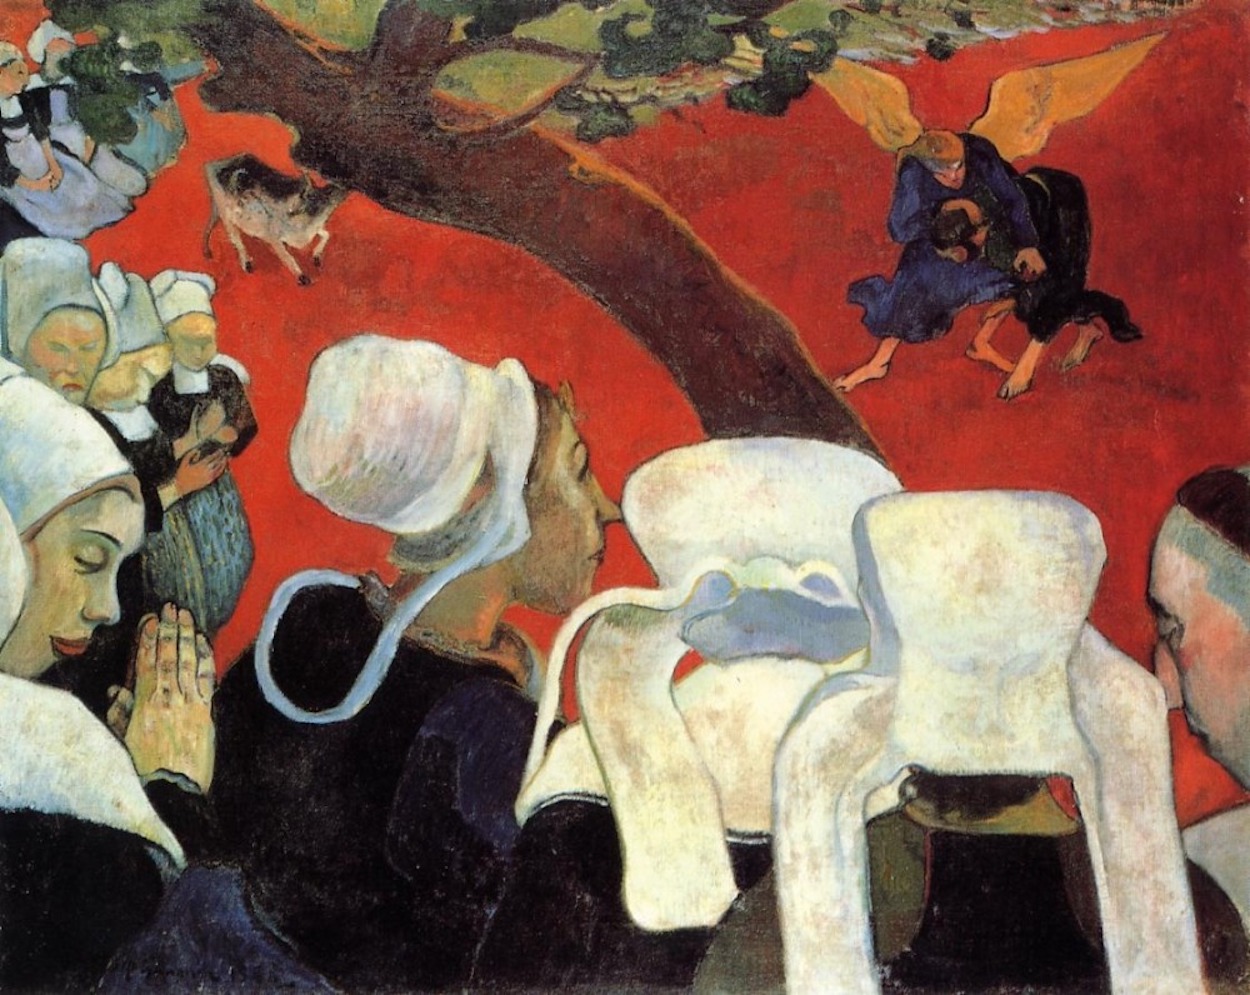 A Visão Depois do Sermão by Paul Gauguin - 1888 - 74.4 x 93.1 cm 